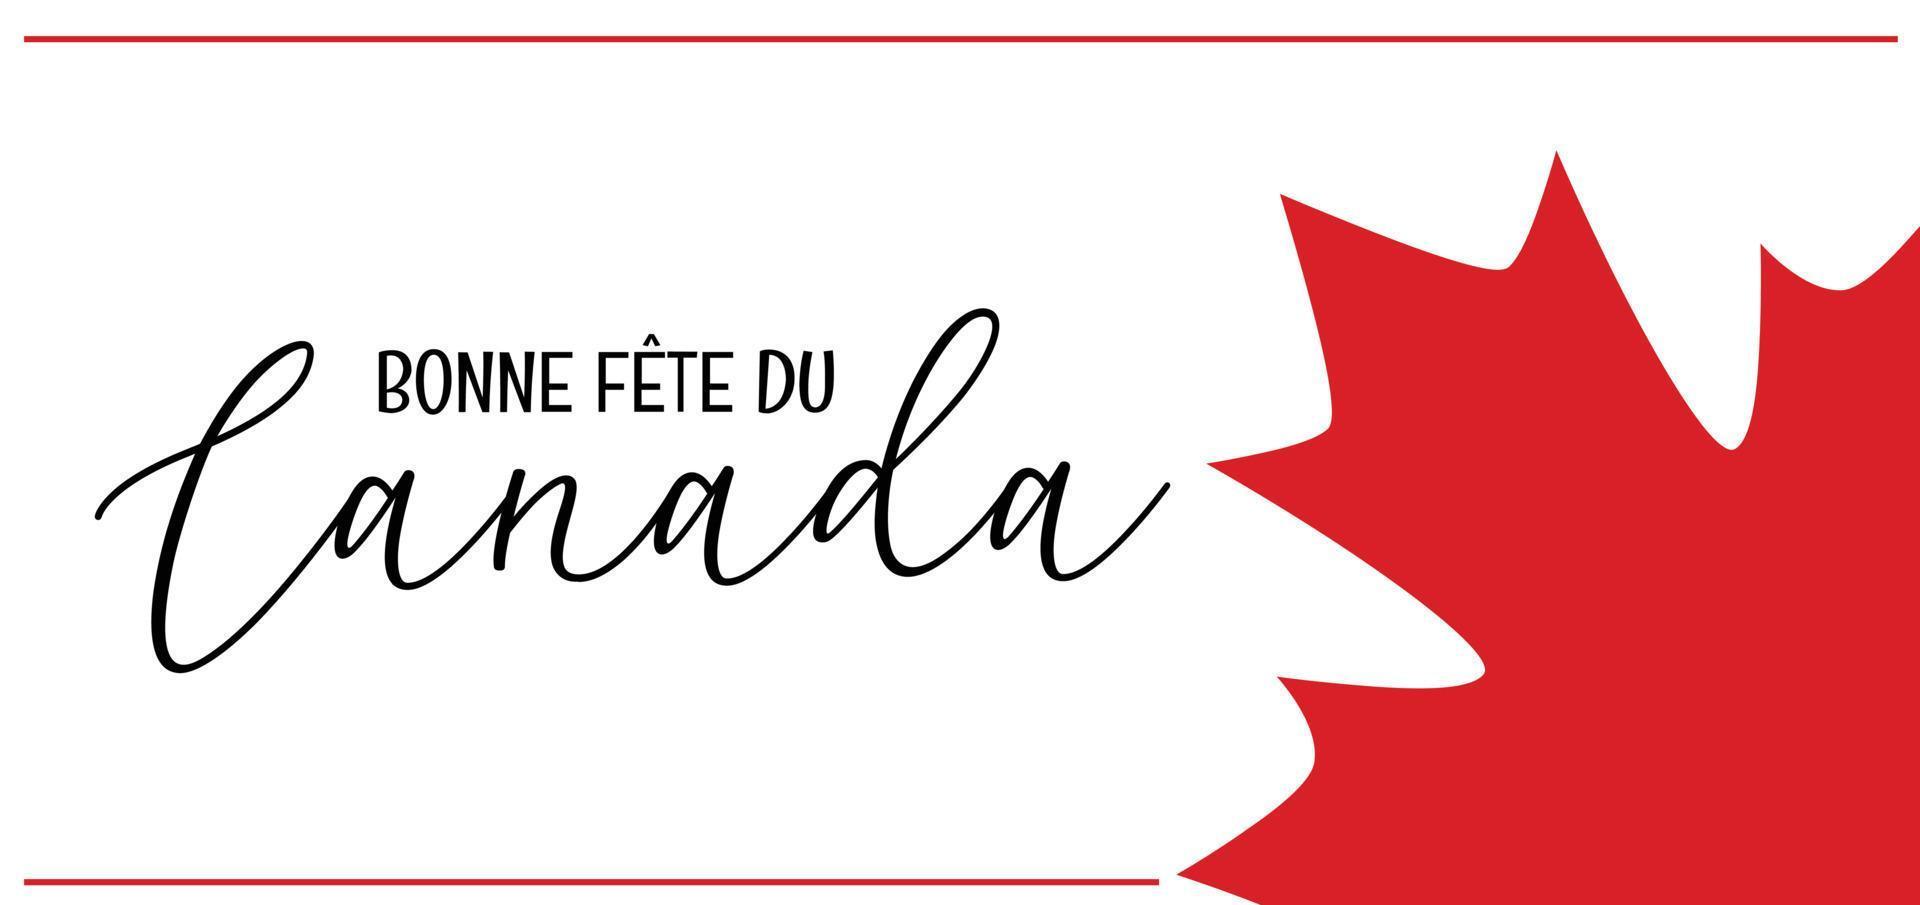 glad kanadadag på franska - bonne fete du canada - gratulationskort med lönnlövsikon från Kanadas nationella flagga. enkel vektordesign för Kanadas dag med text, tryck. vektor